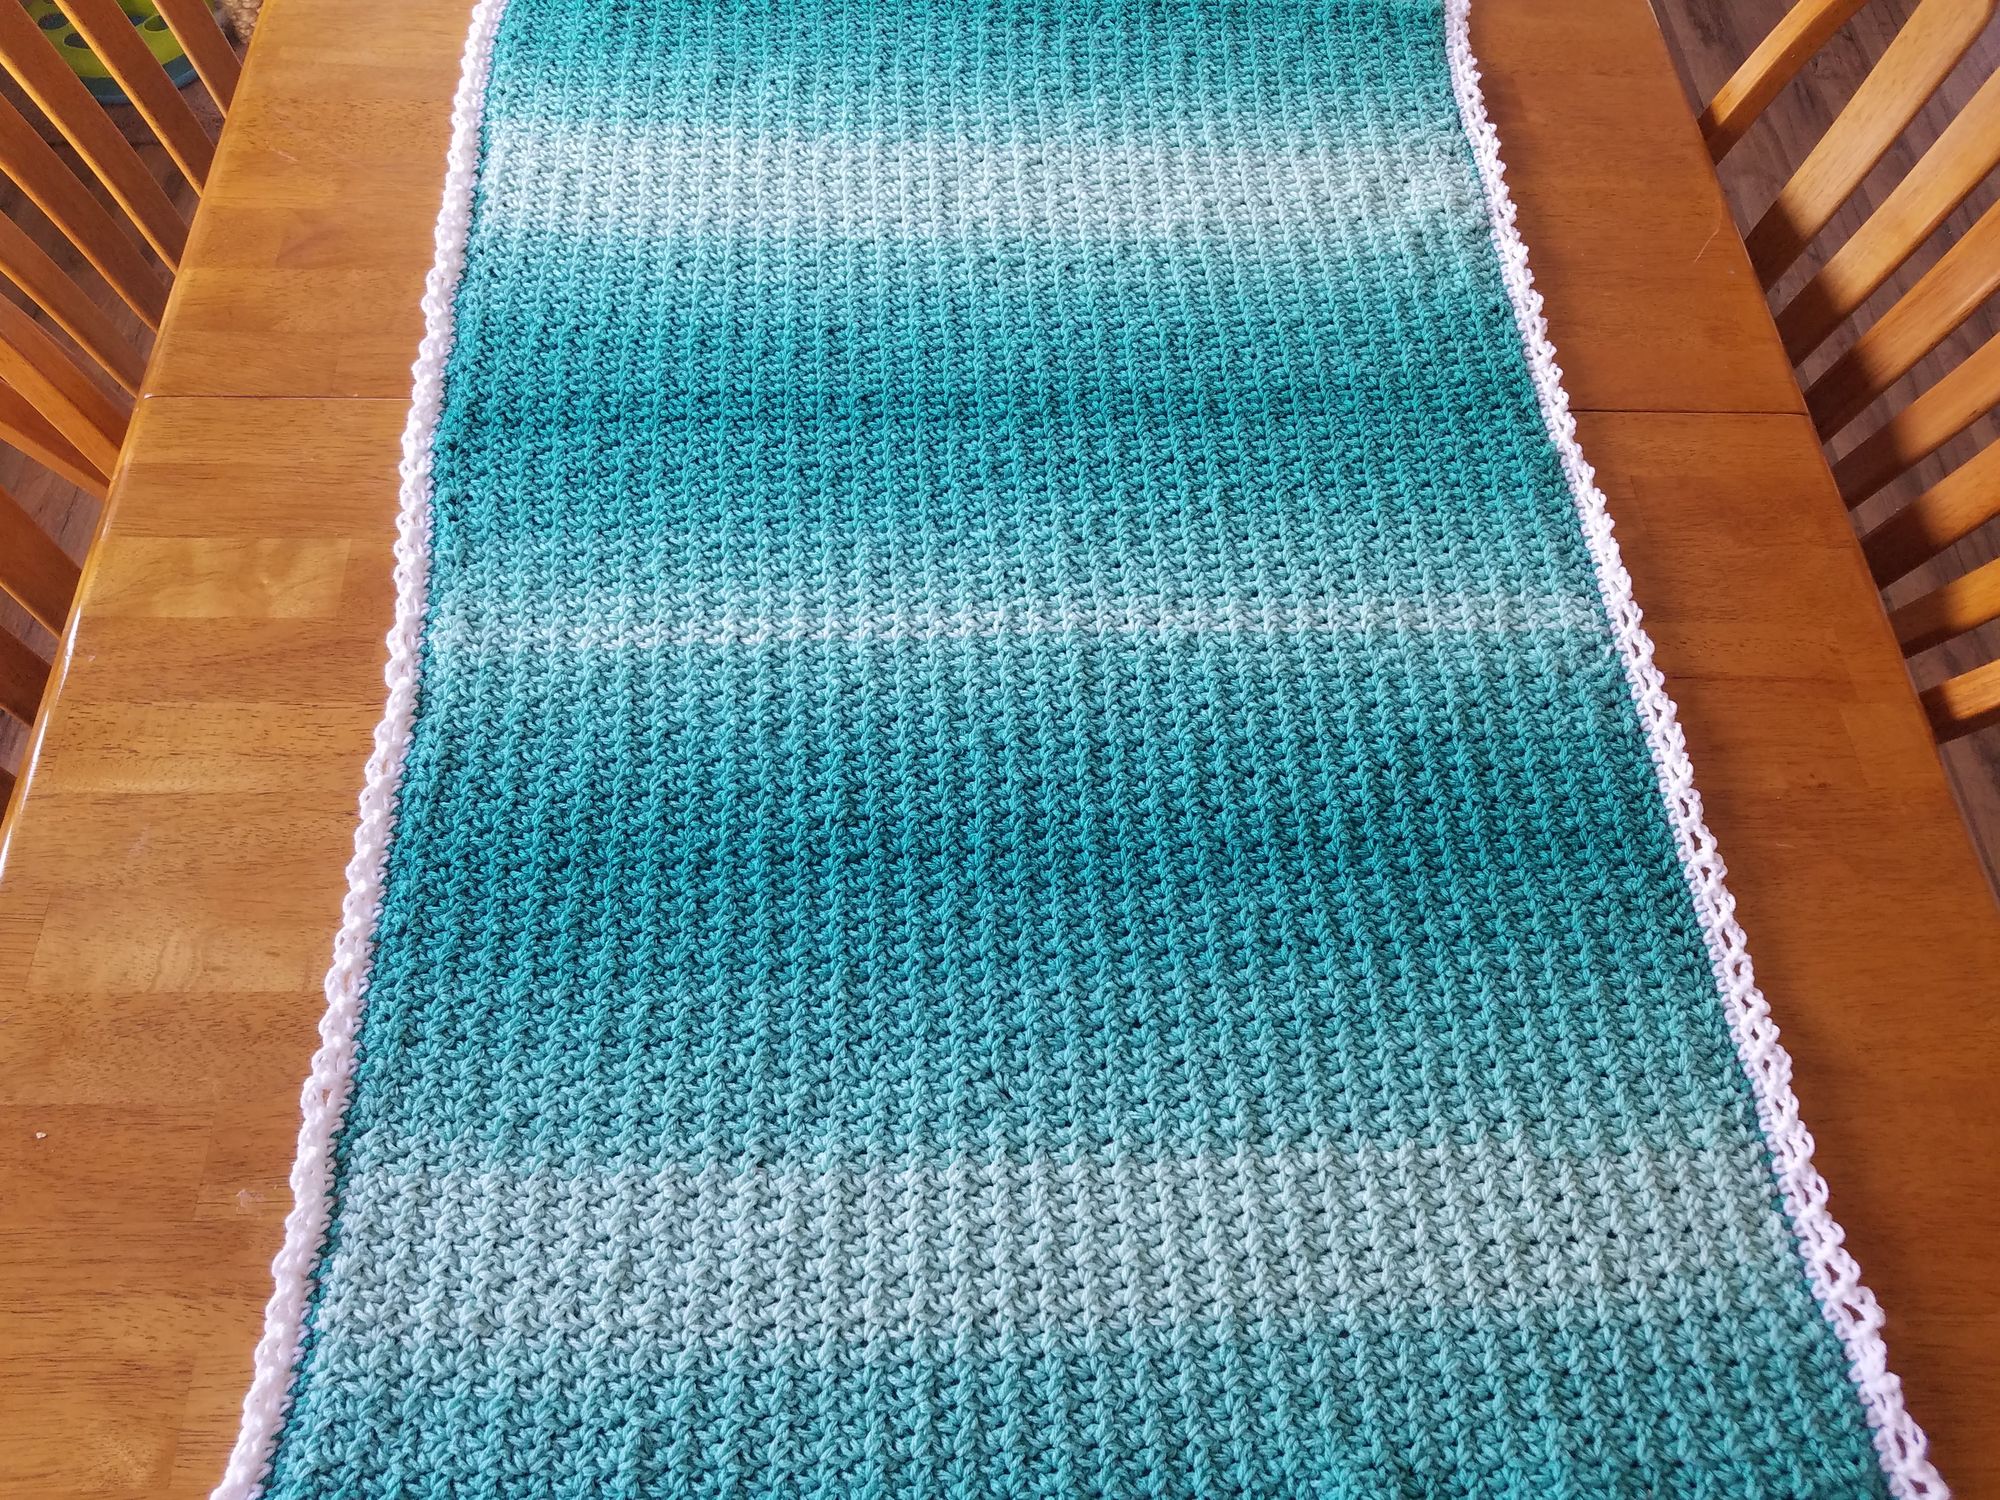 Single Crochet V Stitch Blanket